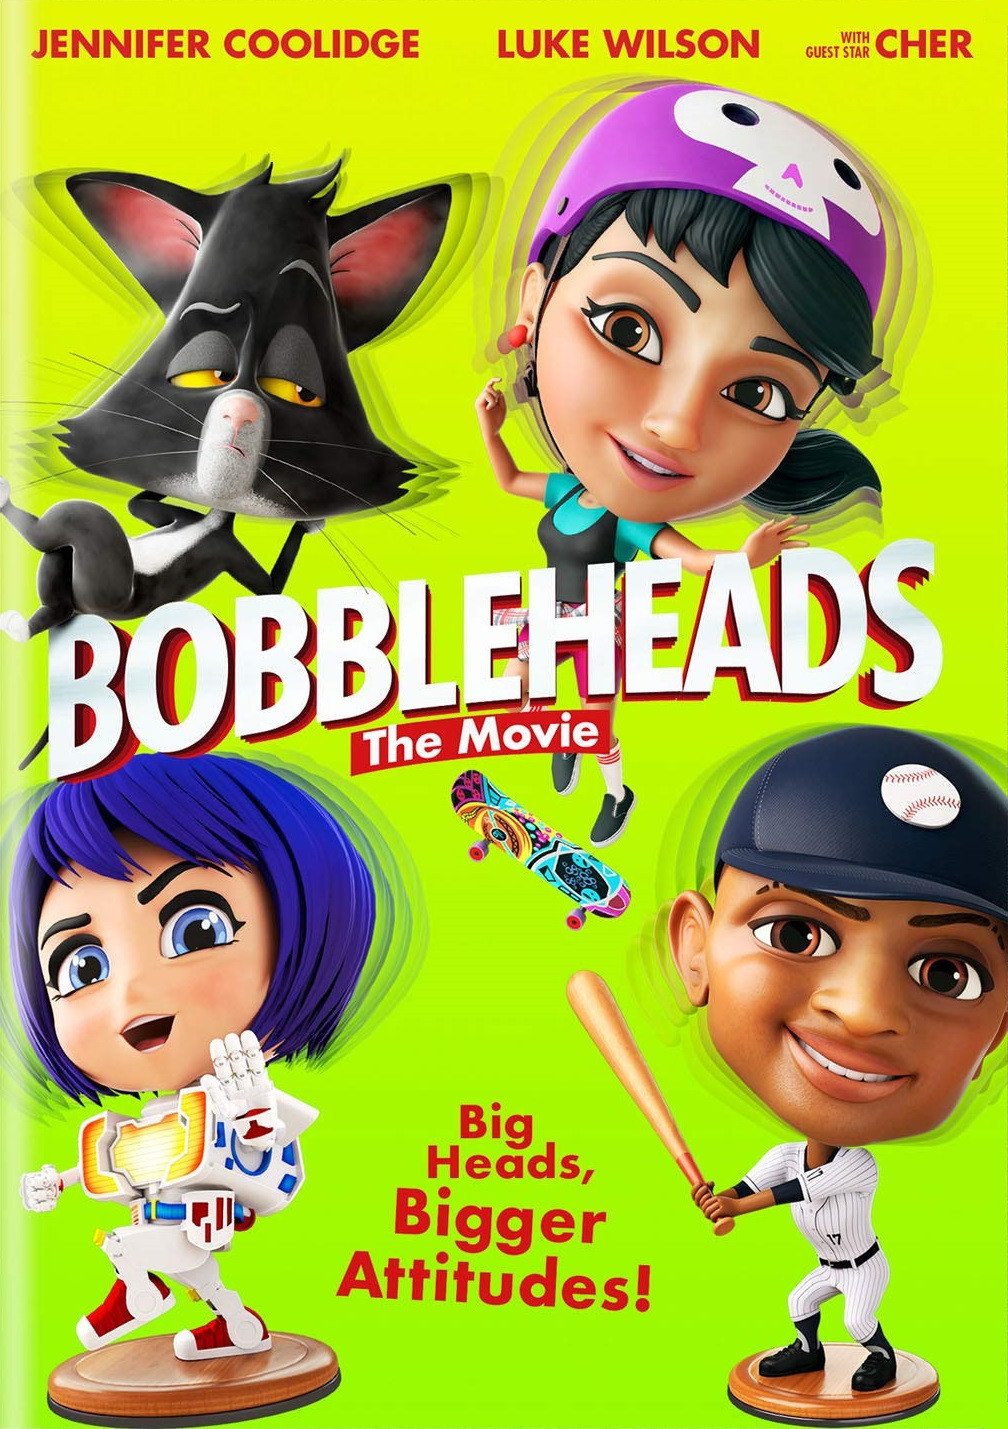 فيلم Bobbleheads: The Movie 2020 مترجم اون لاين